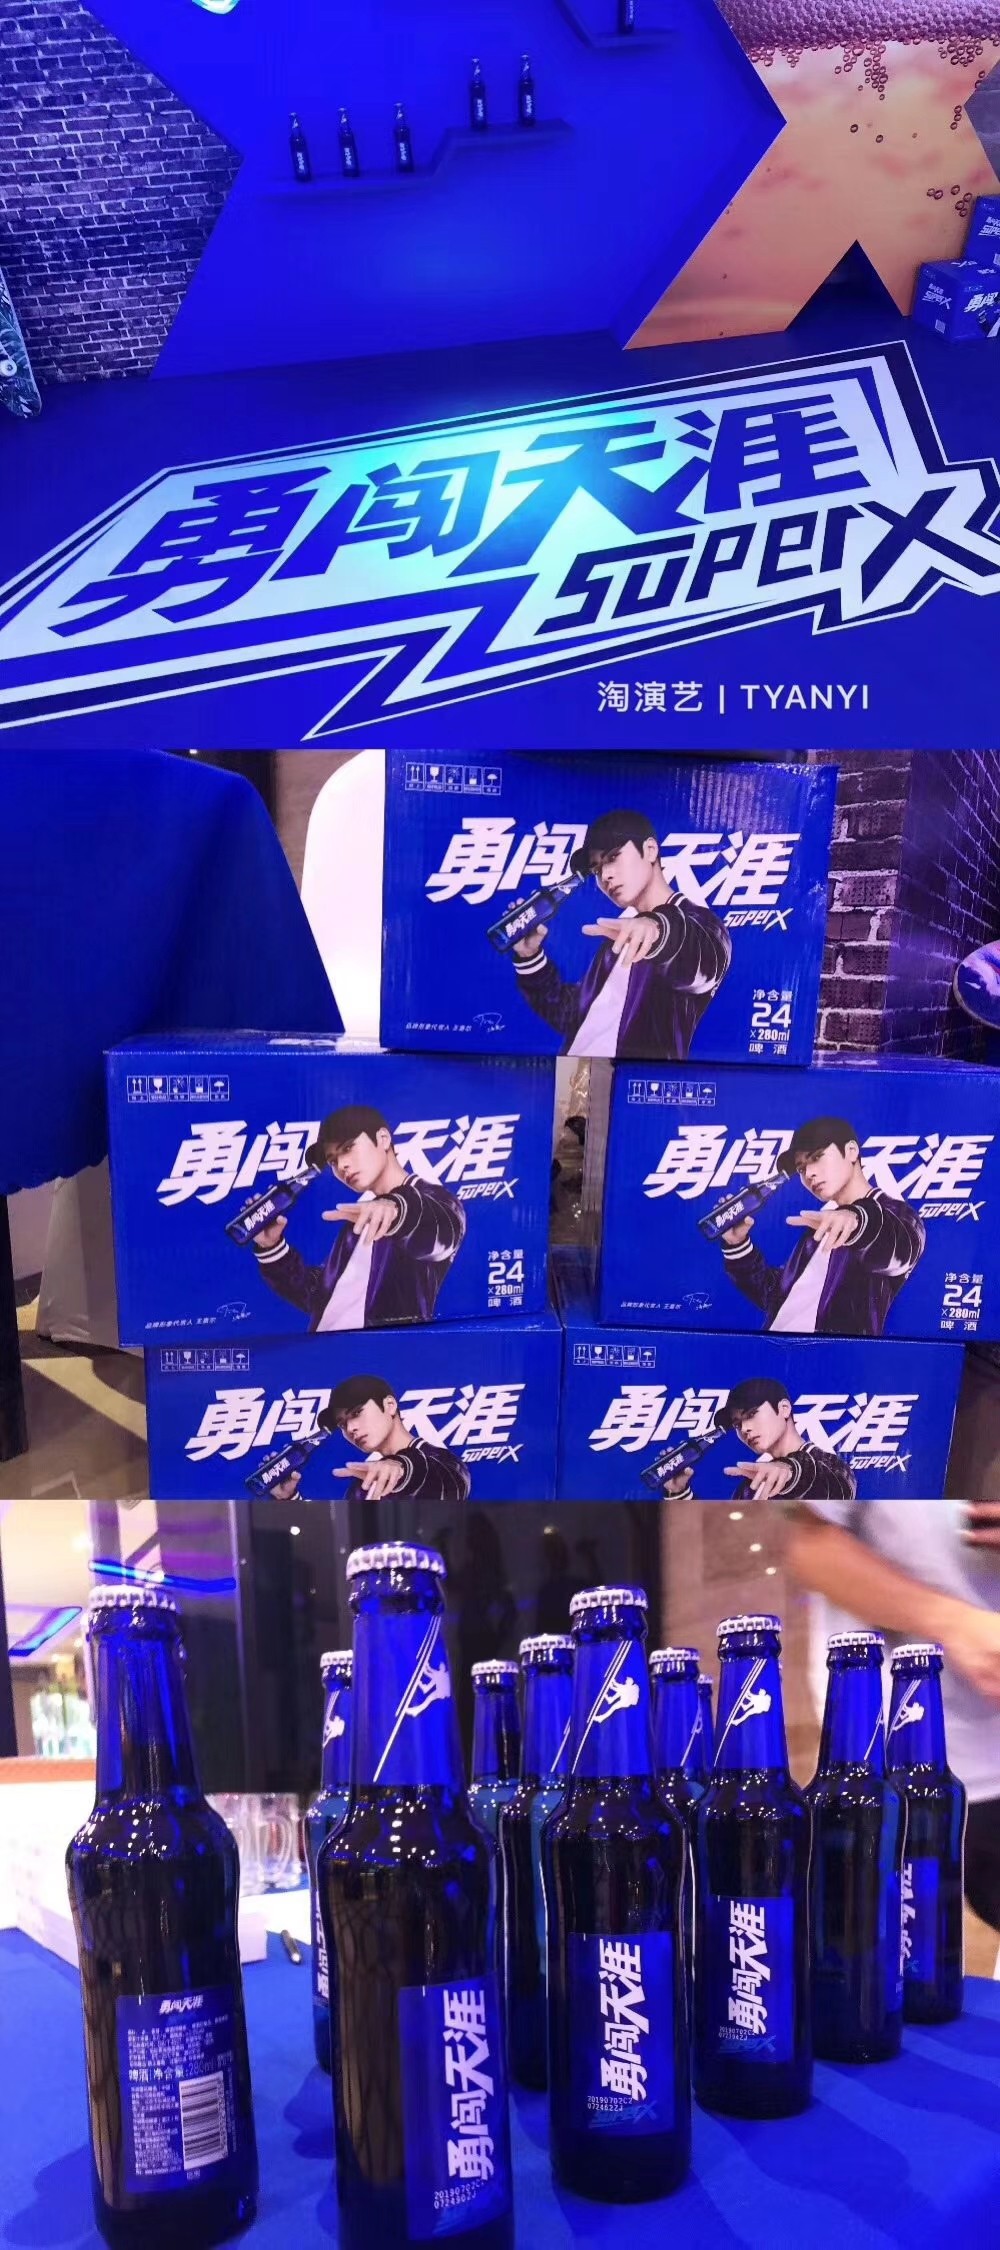 7.20 雪花啤酒勇闯天涯superx推广活动